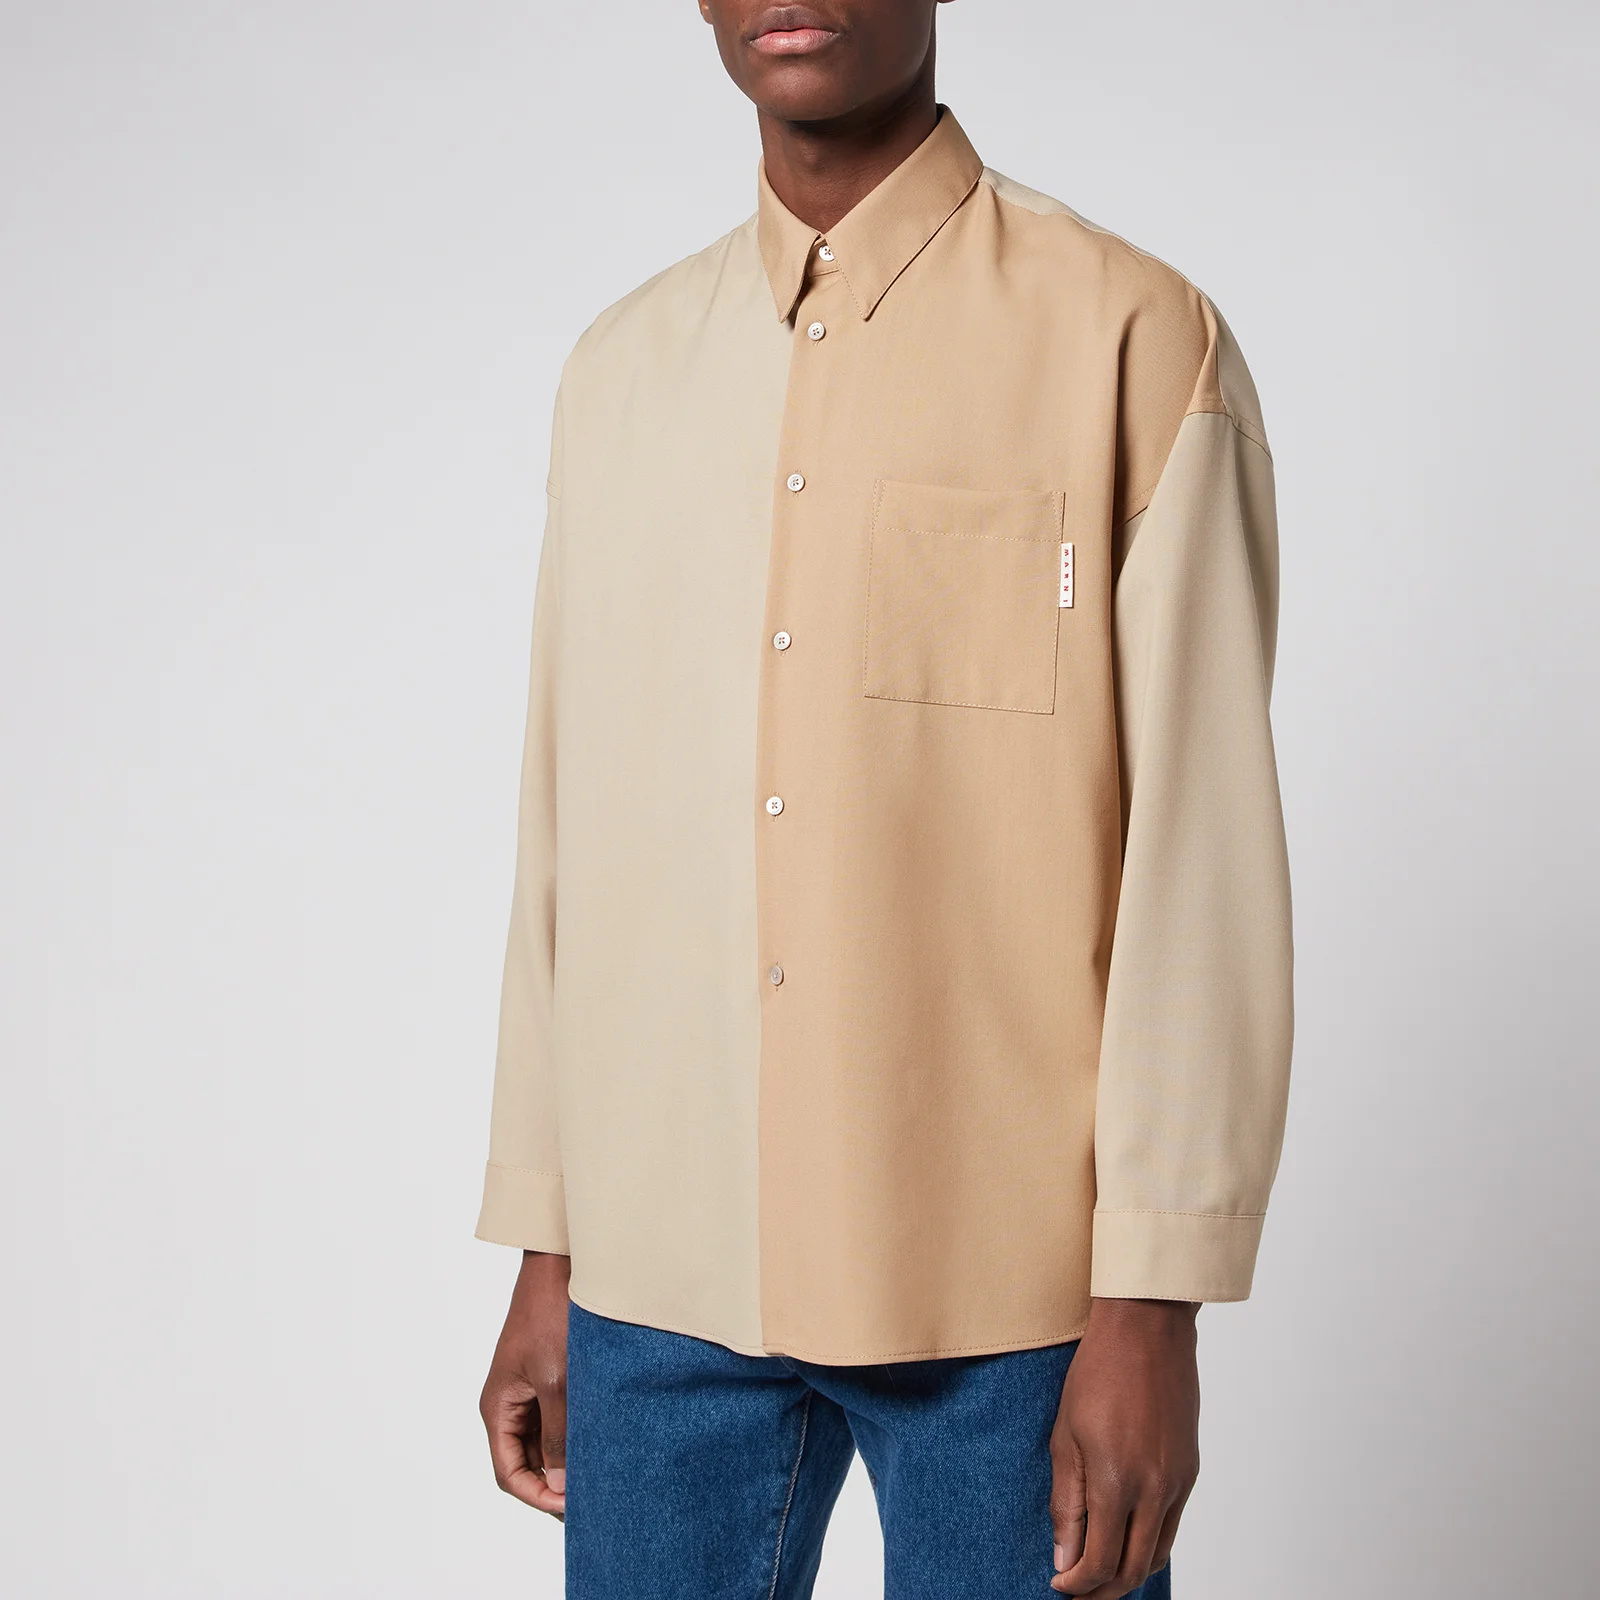 Marni Men's Colour Block Shirt - Soft Beige Image 1